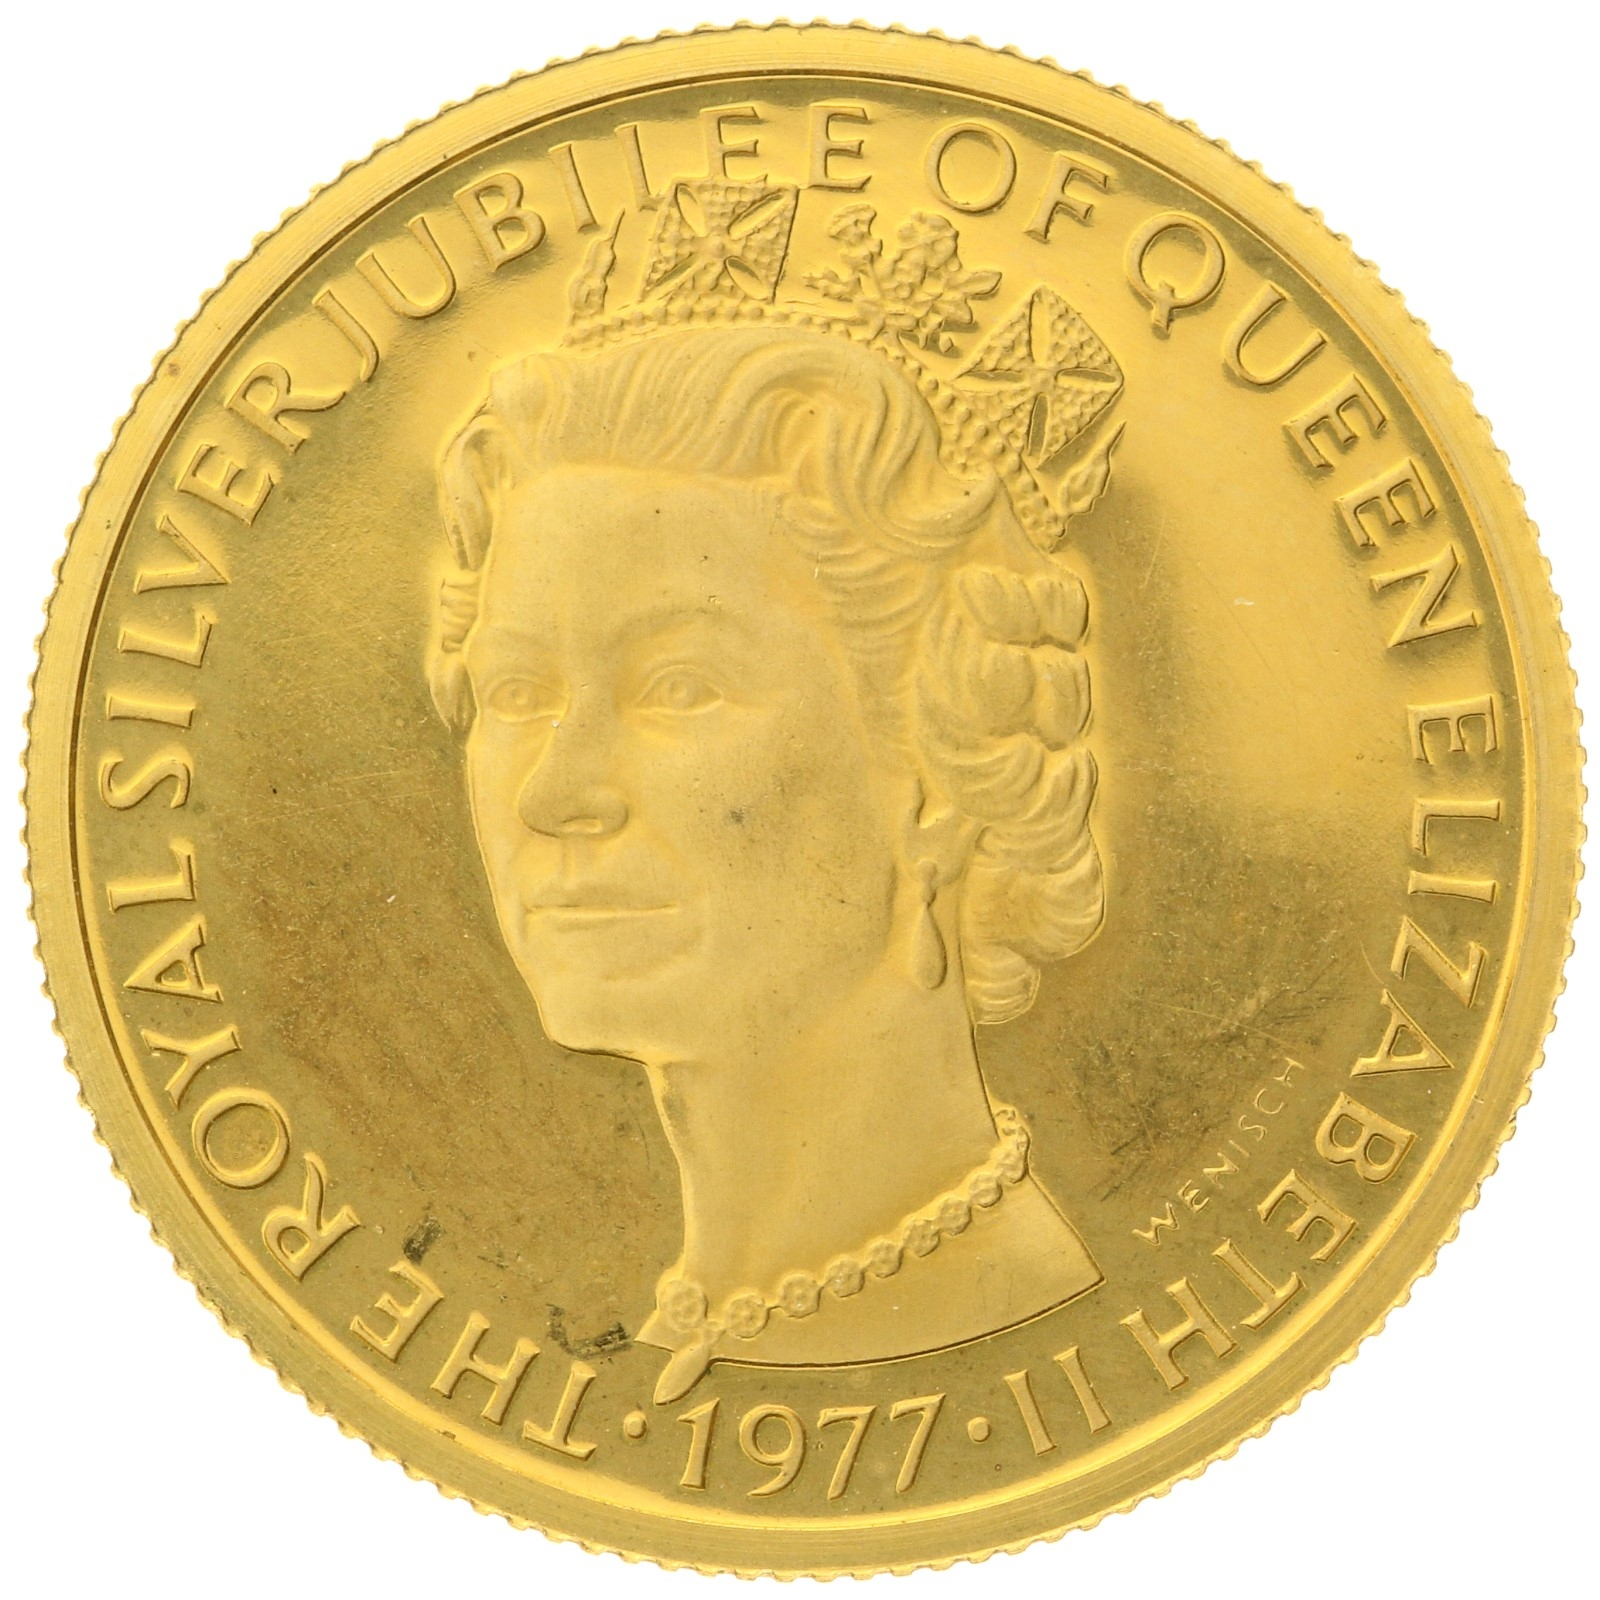 Denmark - Medal (1 ducat) - 1977 - Silver Jubilee